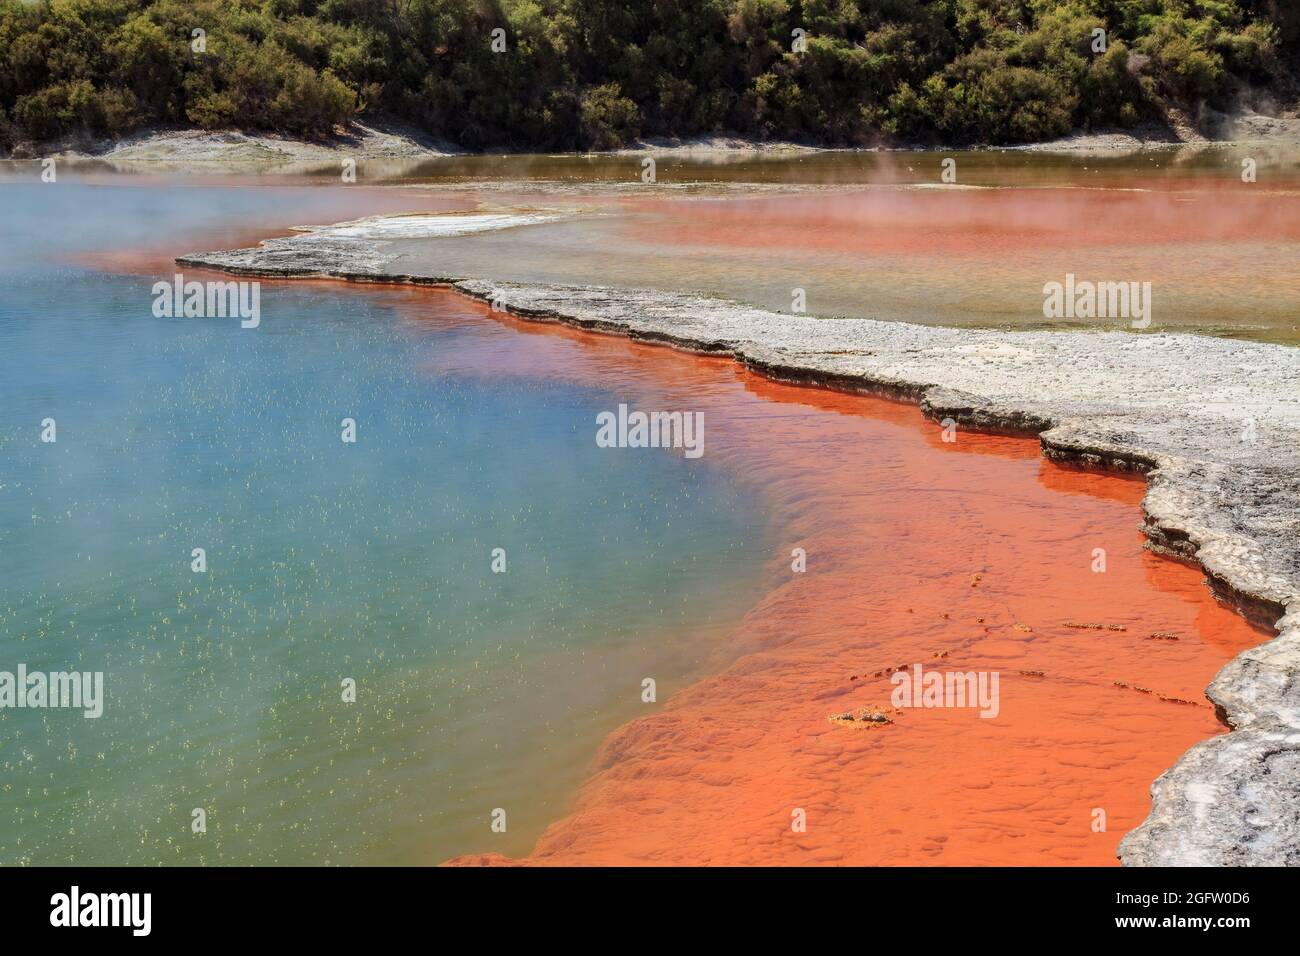 La Champagne Pool nell'area geotermica di Waiotapu, Nuova Zelanda, prende  il nome dalle bolle che da essa si innalzano costantemente Foto stock -  Alamy